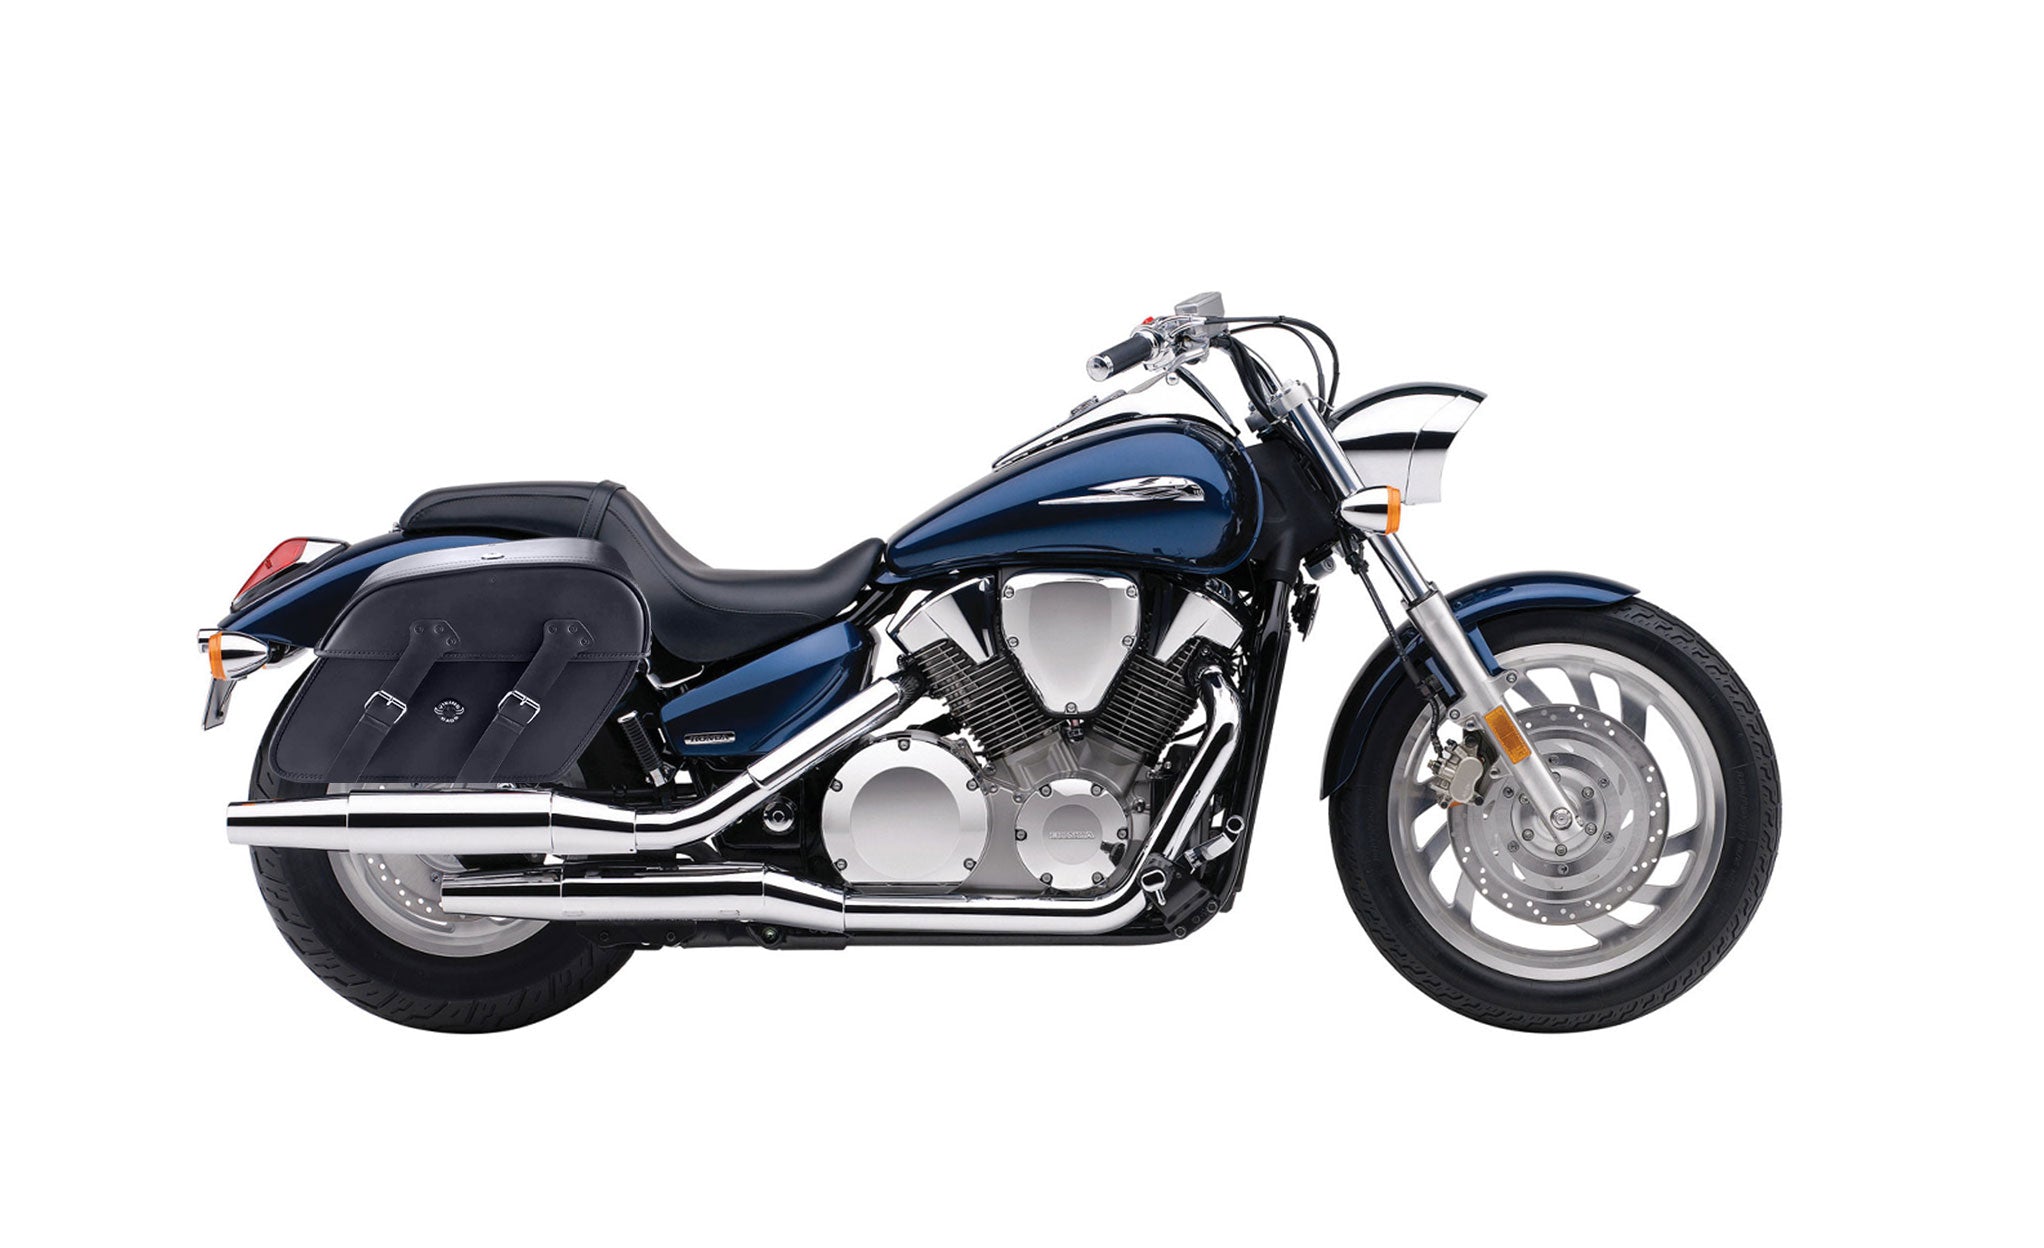 Viking Raven Extra Large Honda Vtx 1300 C Shock Cut Out Leather Motorcycle Saddlebags on Bike Photo @expand